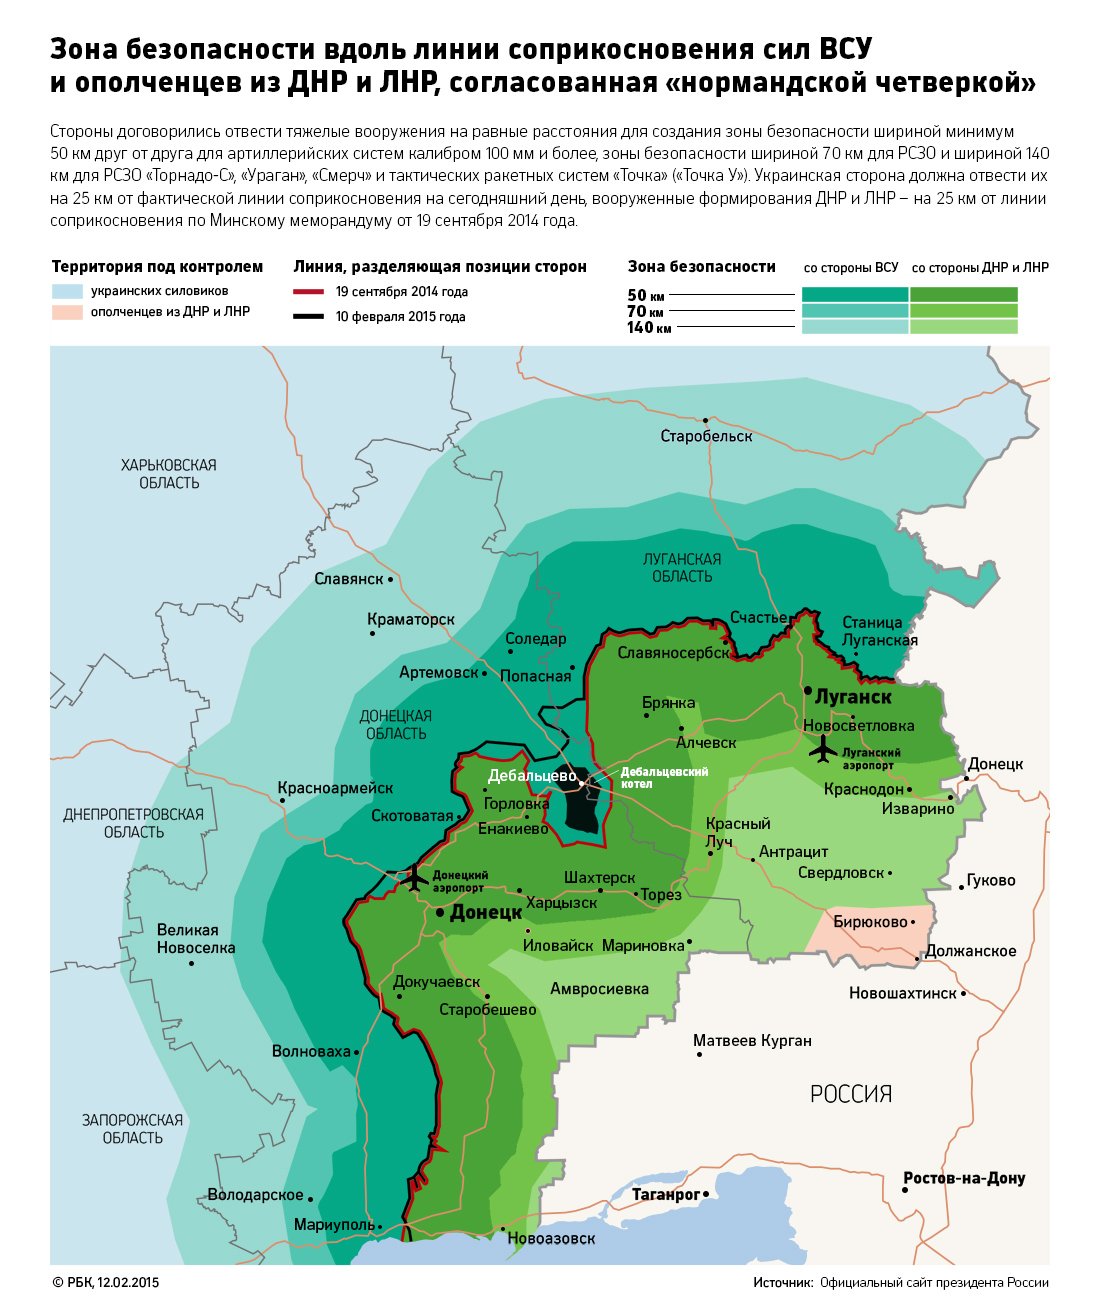 Киев начал готовиться к возобновлению боевых действий в Донбассе